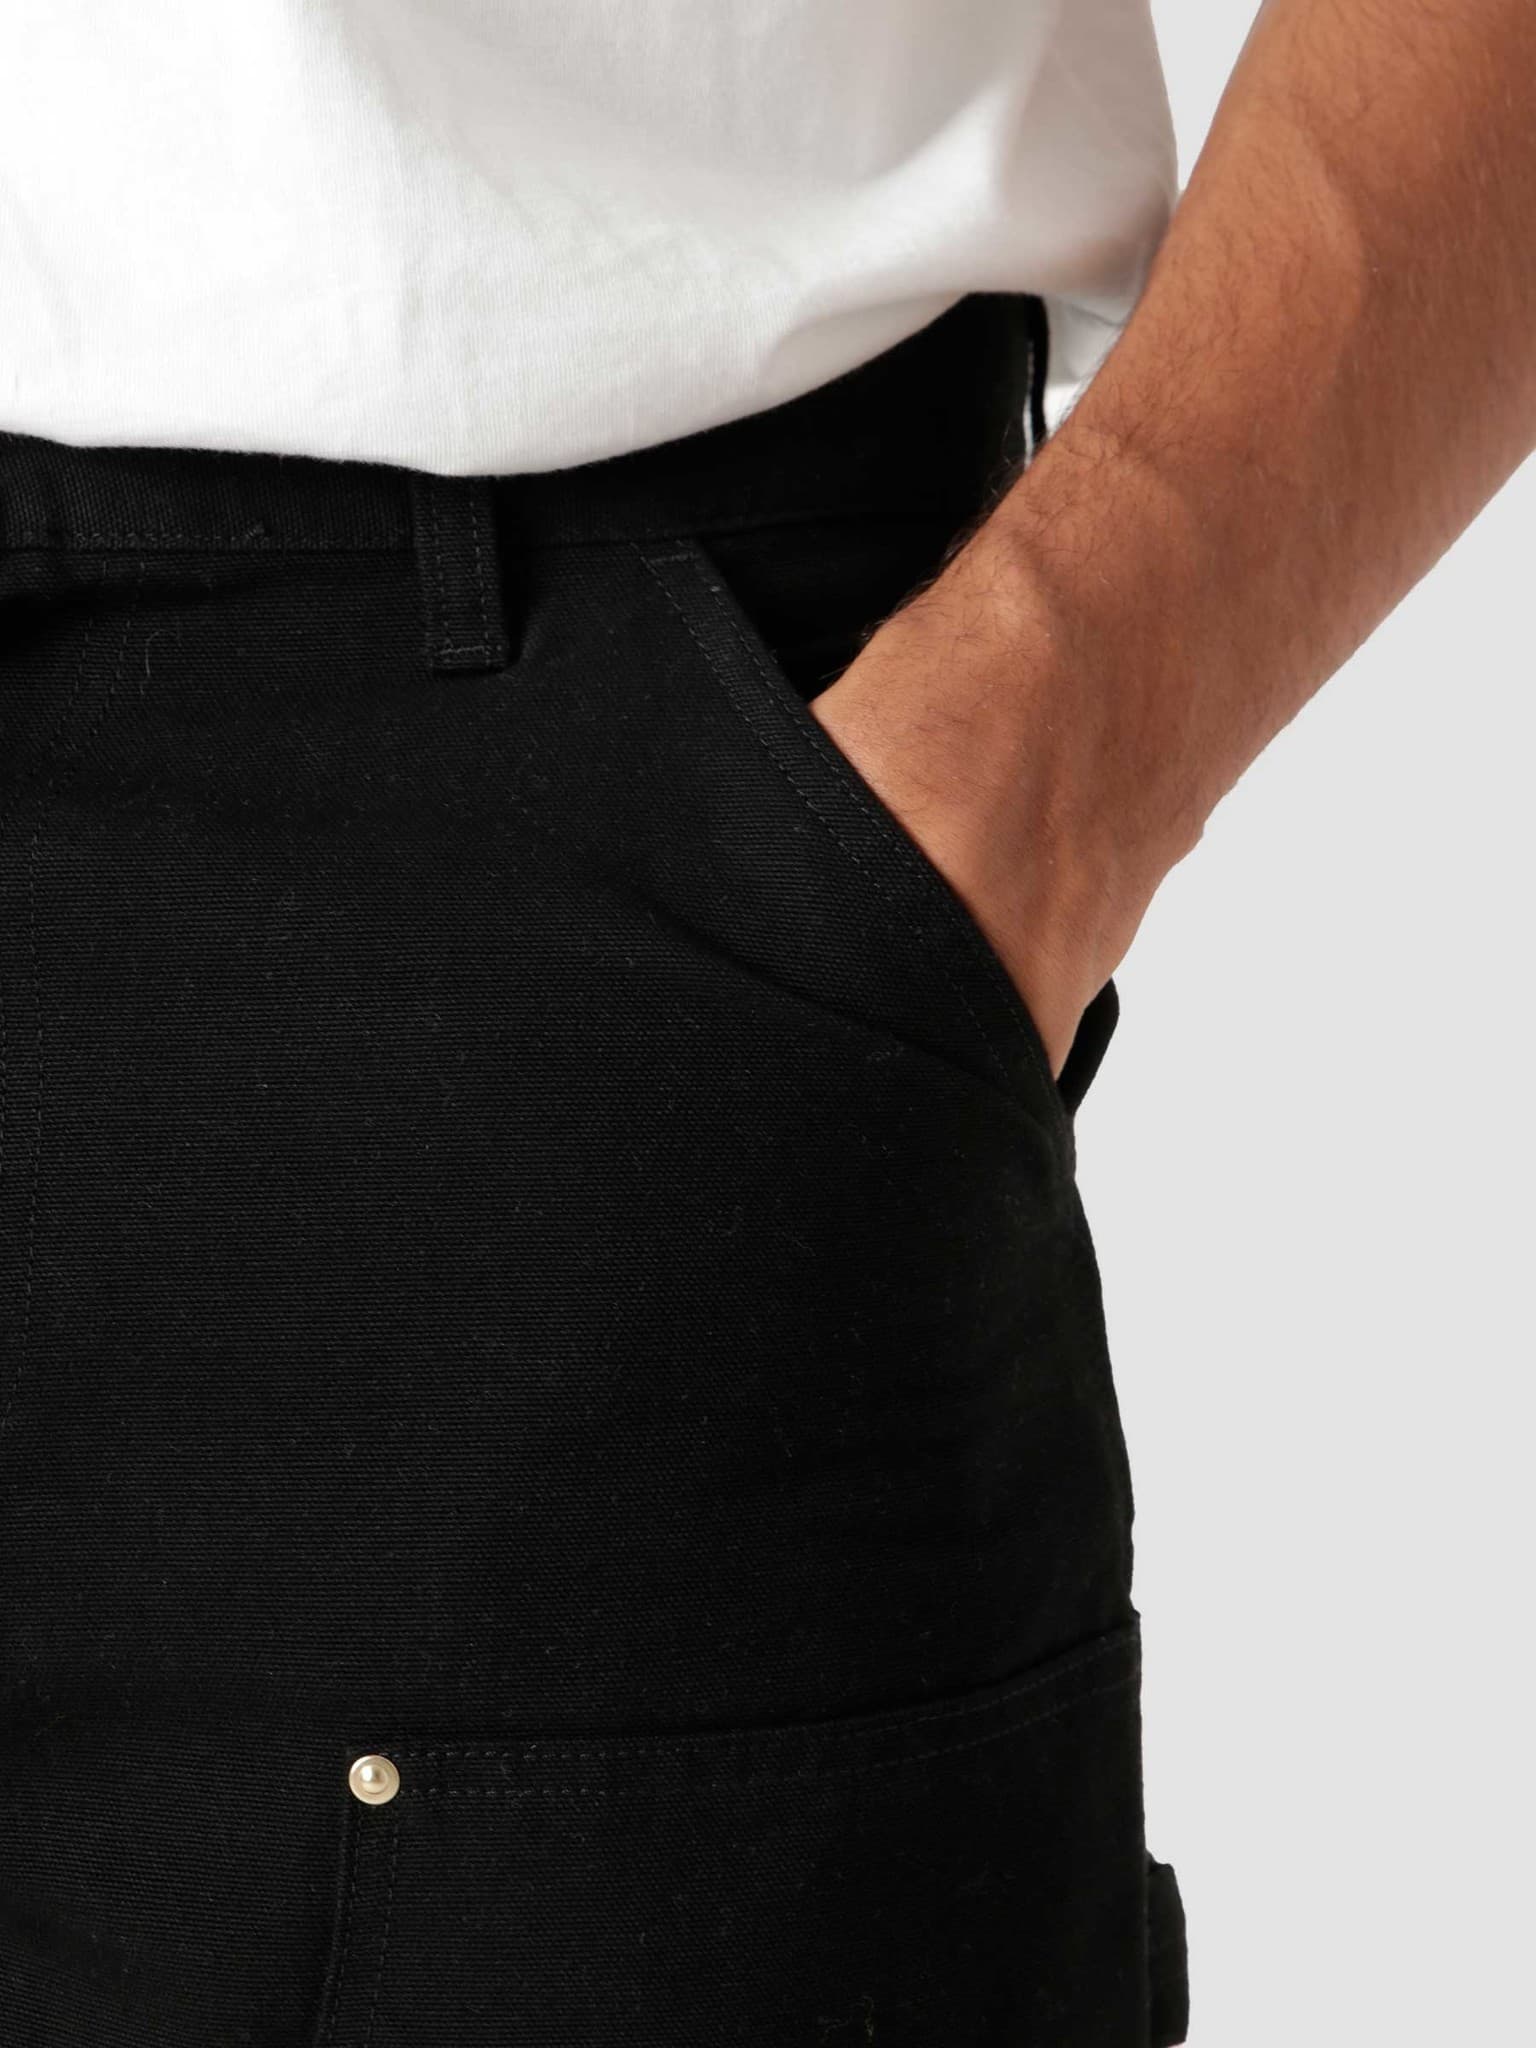 Carhartt WIP – Double Knee Pant Black /rinsed